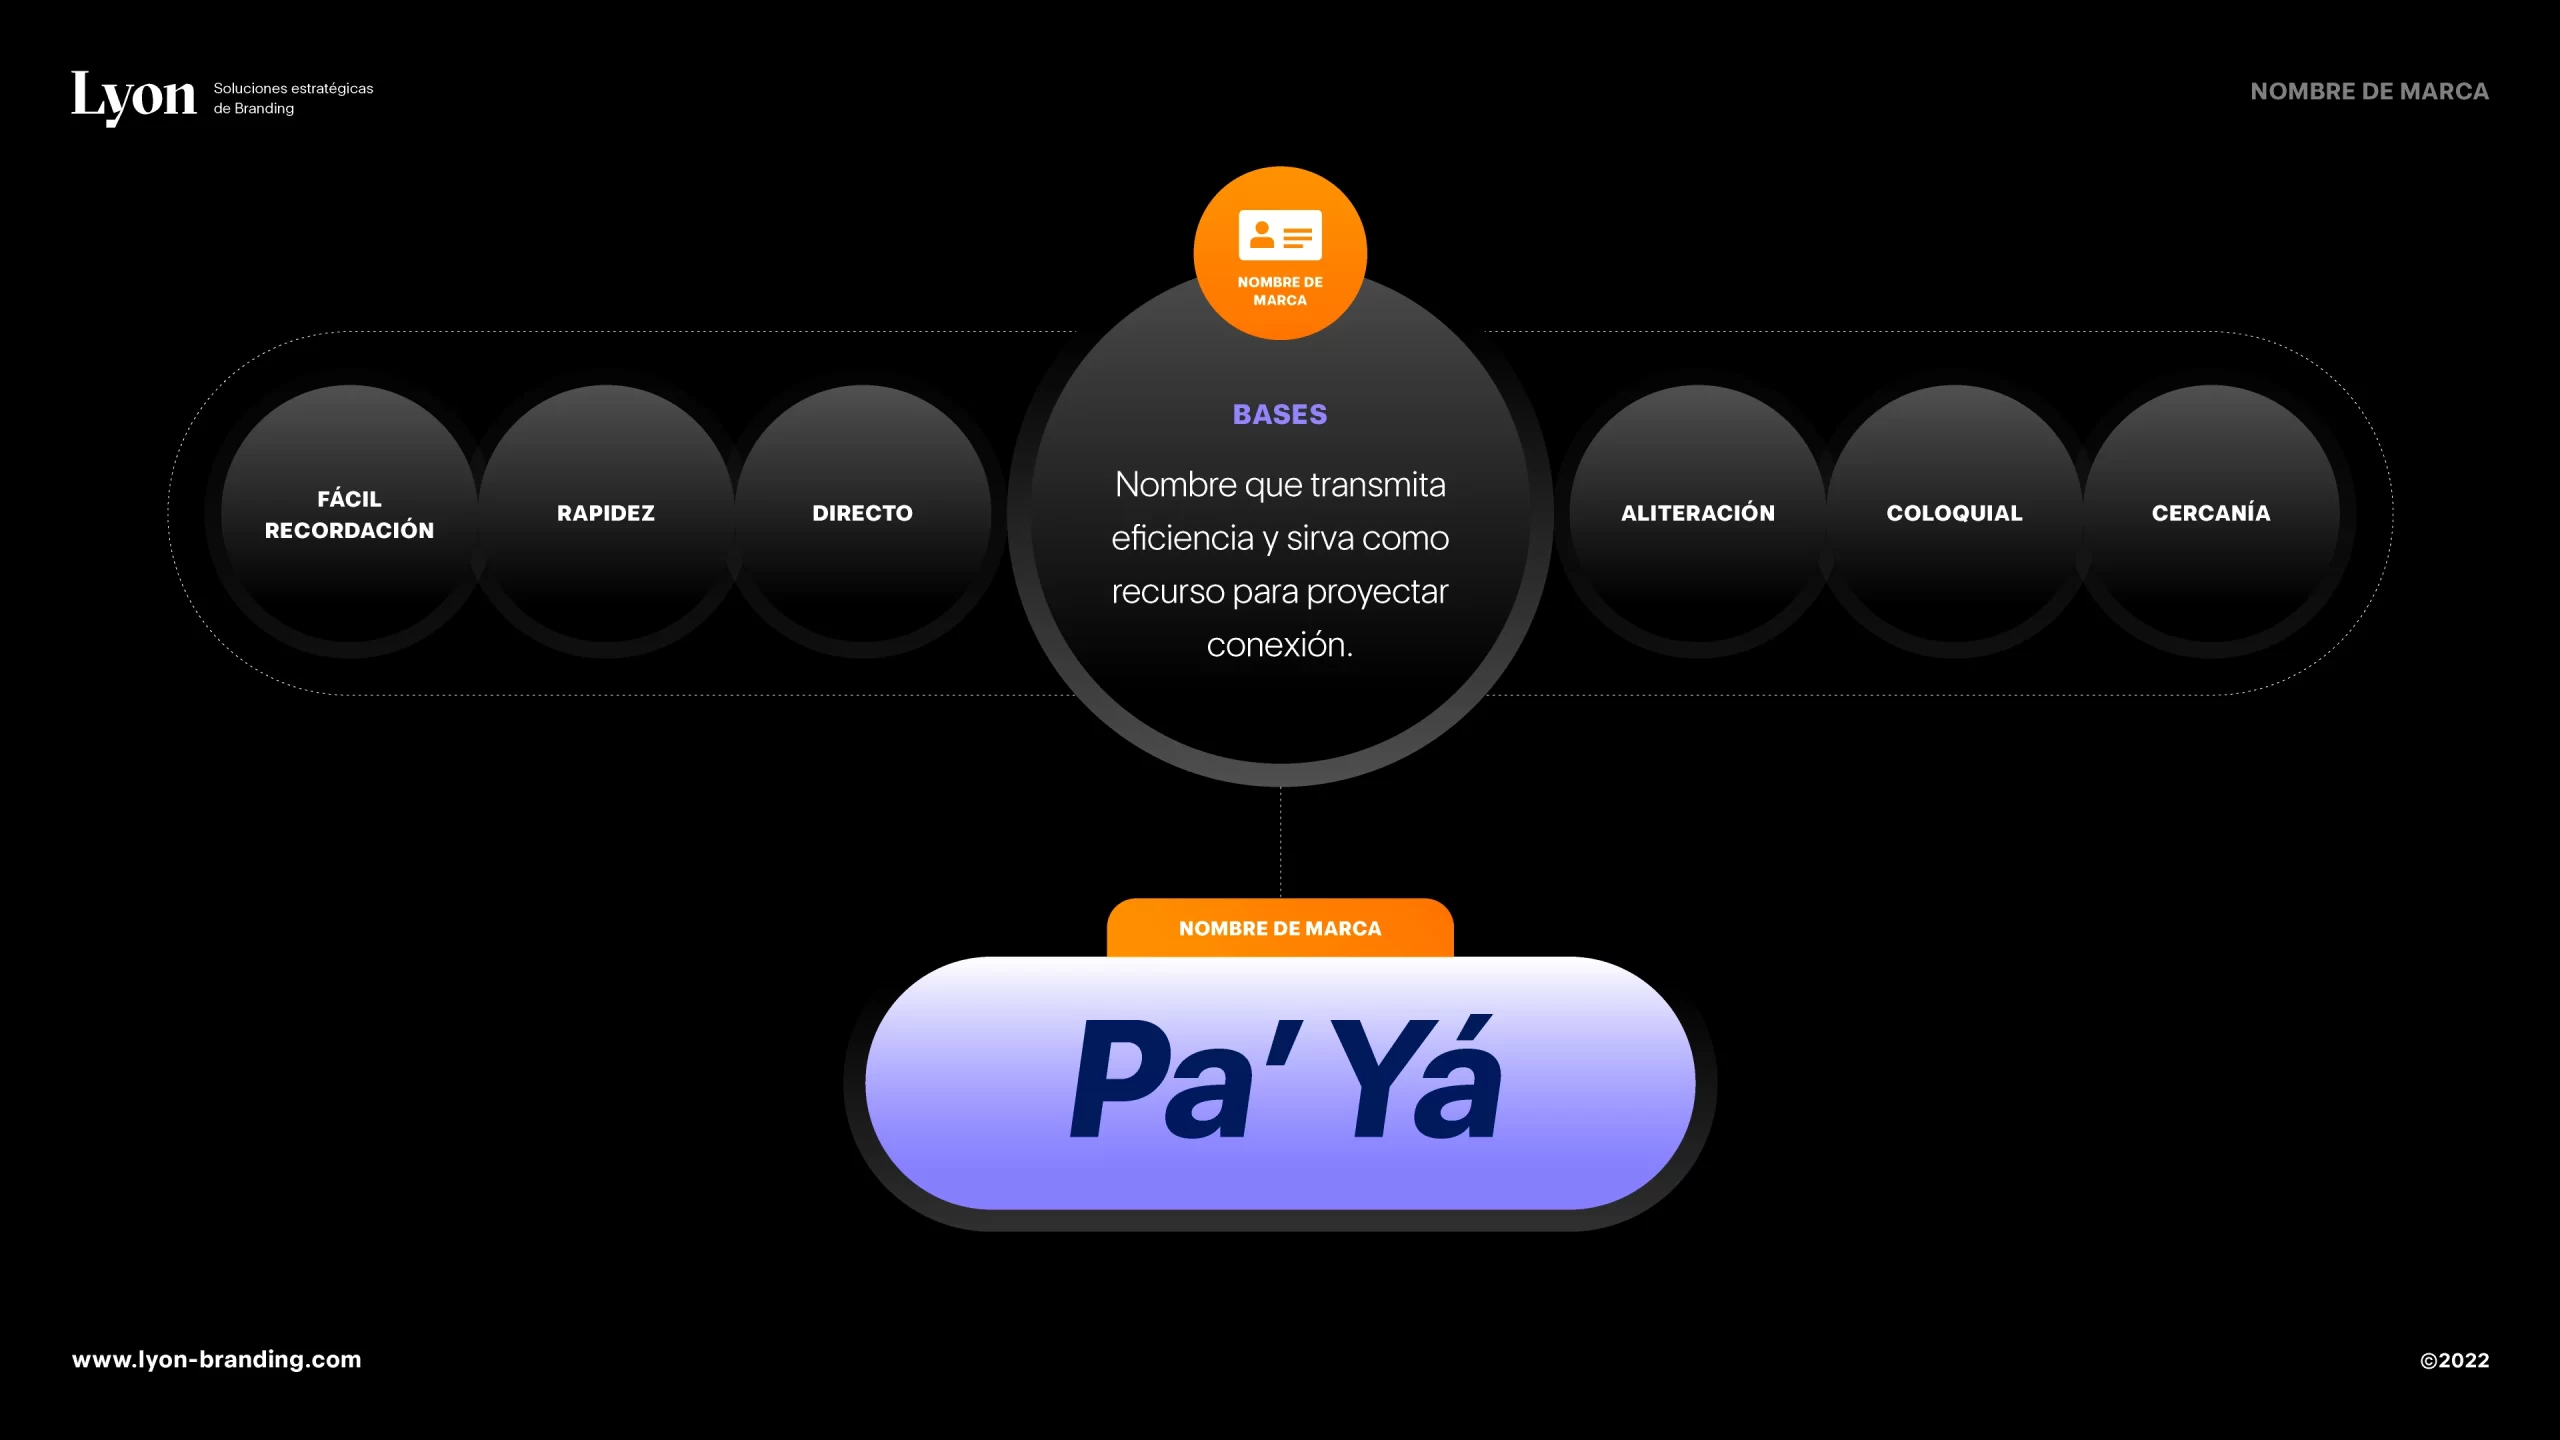 Nombre de marca propuesto para el proyecto Pa yá.